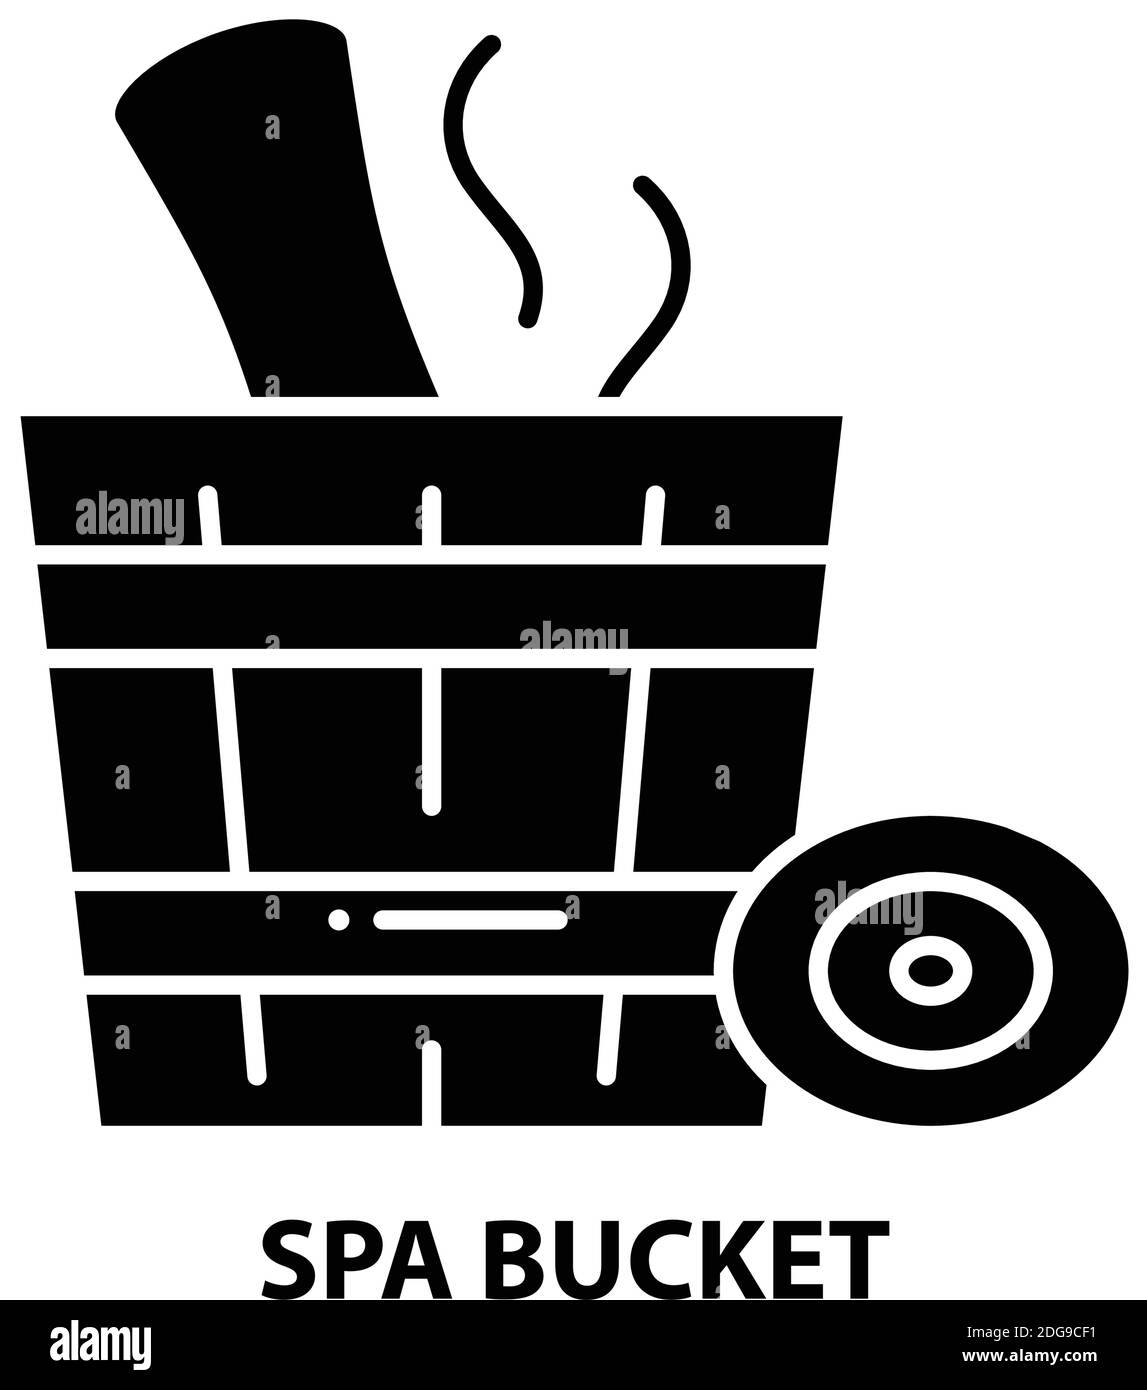 Spa-Bucket-Symbol, schwarzes Vektorzeichen mit bearbeitbaren Konturen, Konzeptdarstellung Stock Vektor